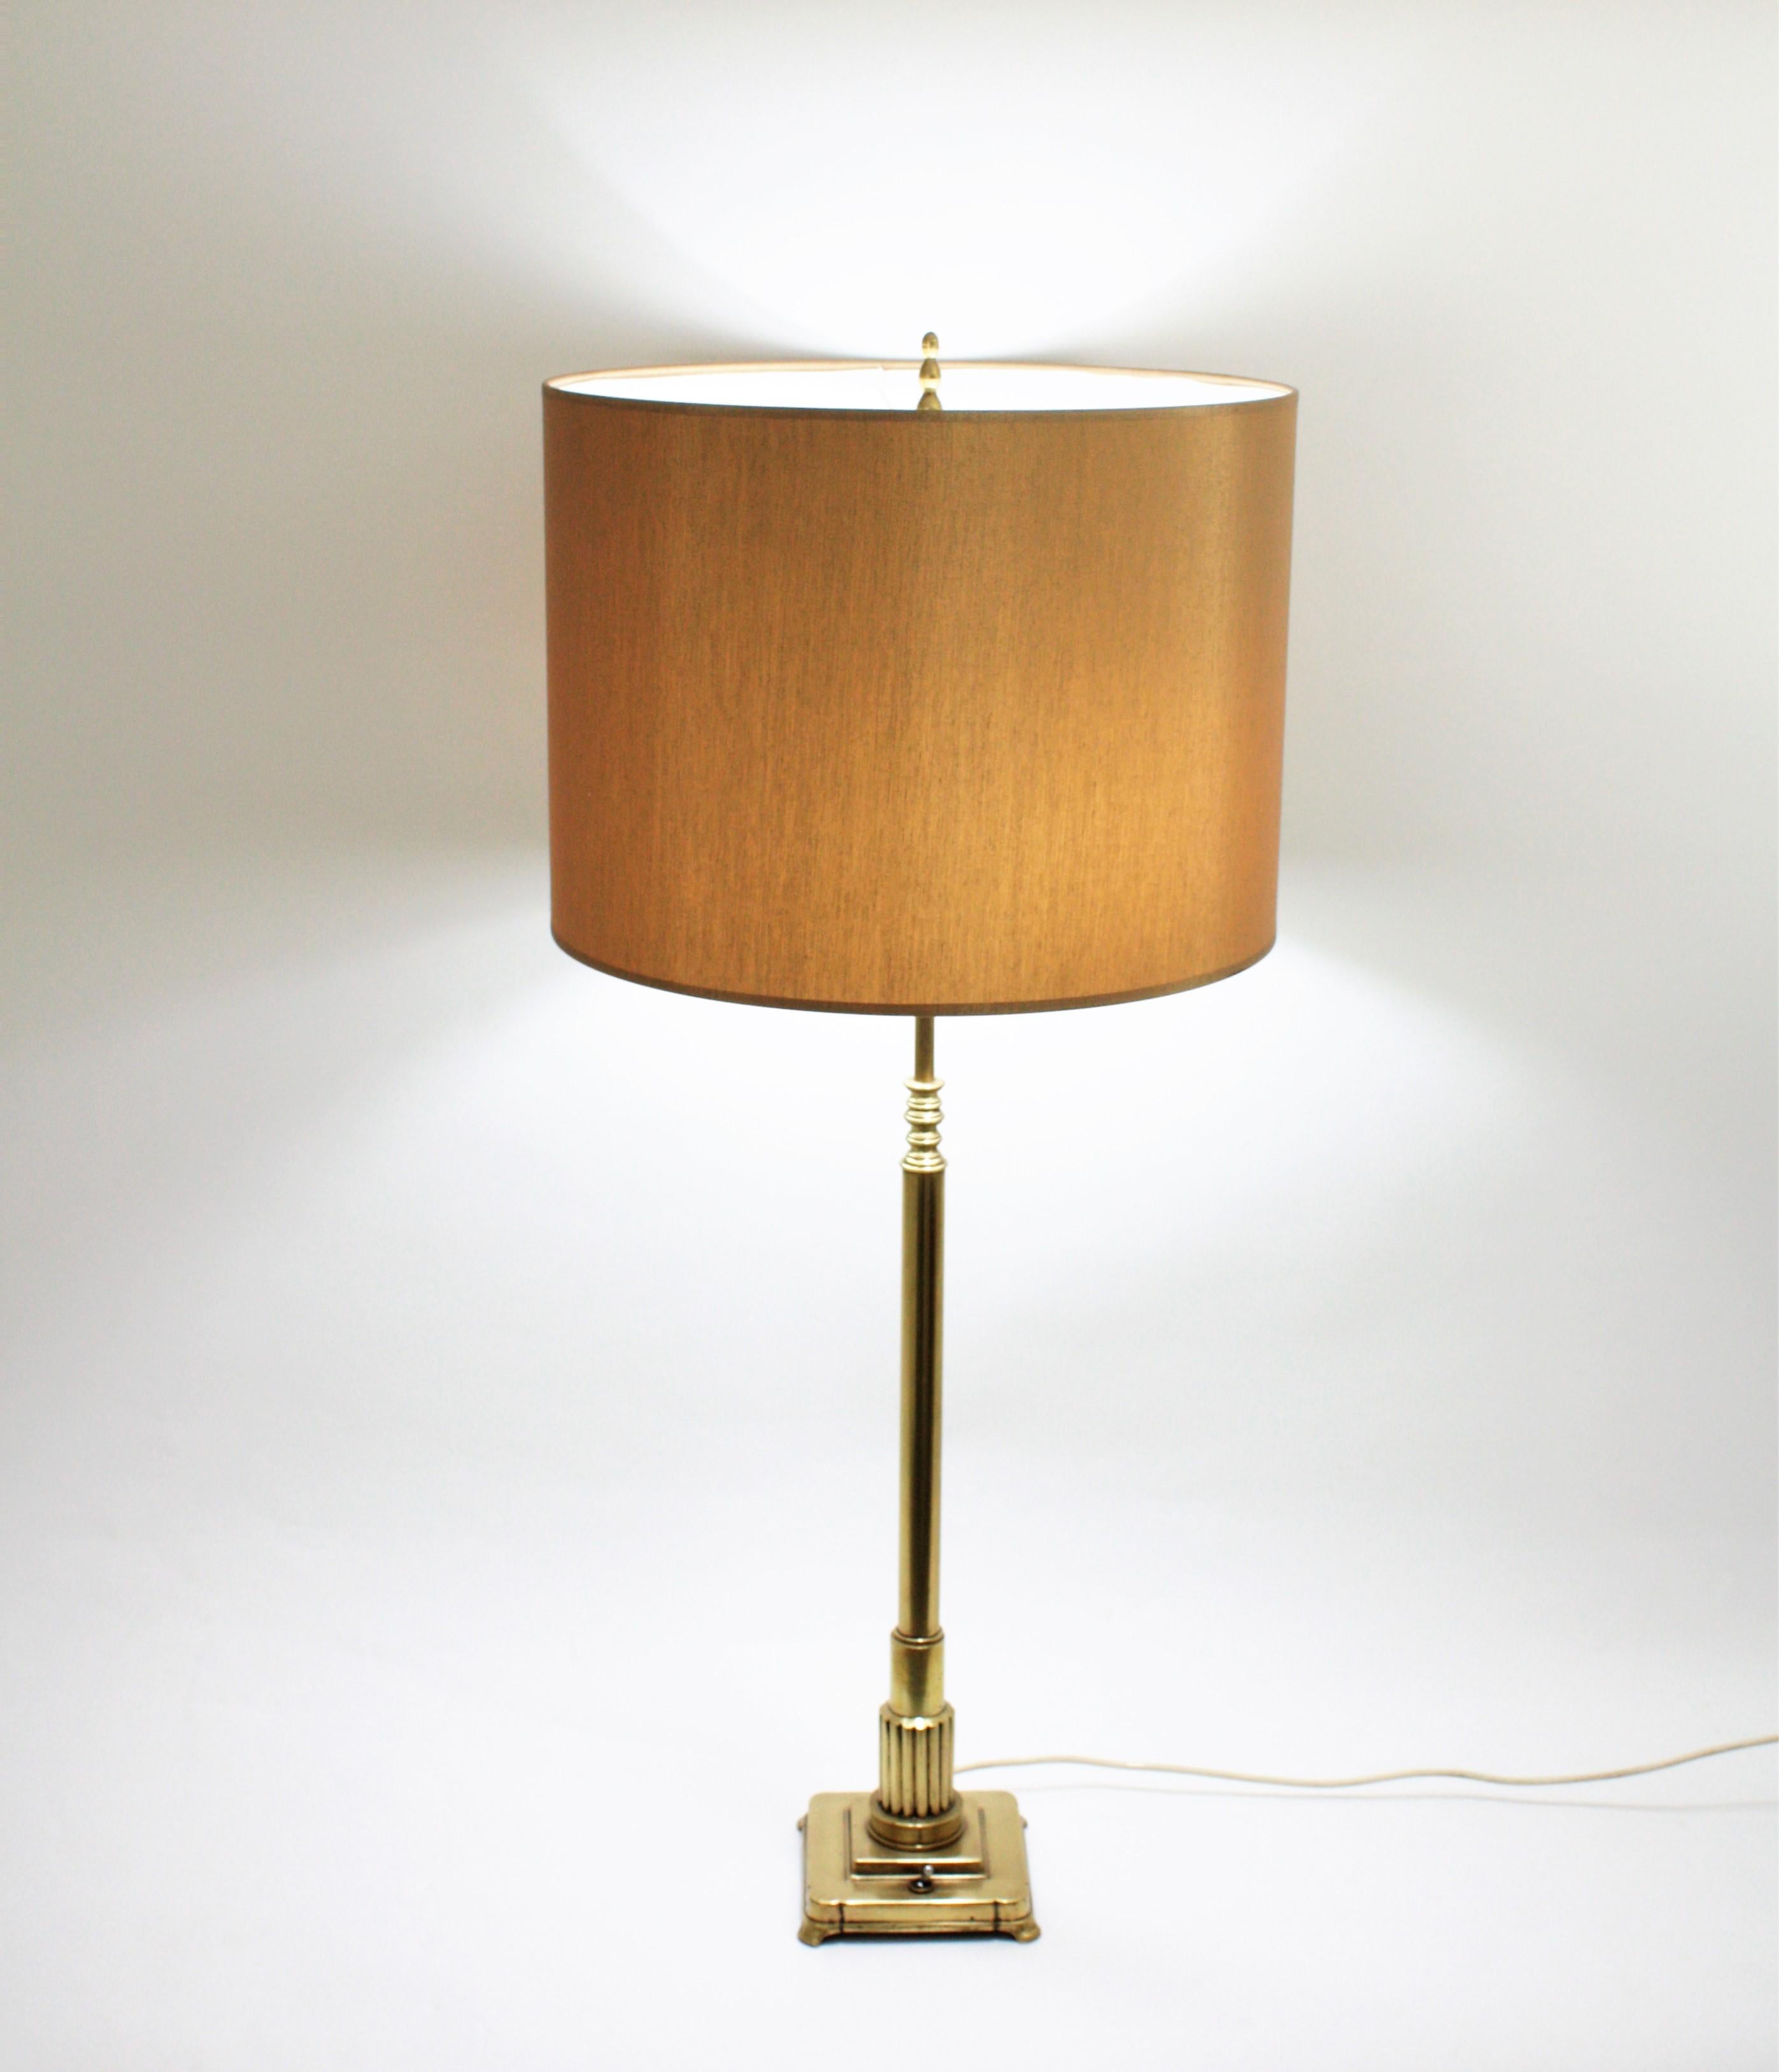 Elegante Art-Déco-Tischlampe aus poliertem Messing, Frankreich, 1930er Jahre.
Diese zweiflammige Tischleuchte hat einen säulenförmigen Körper, der auf einem quadratischen Fuß mit Ein-/Ausschalter steht.
Das Messing wurde poliert und